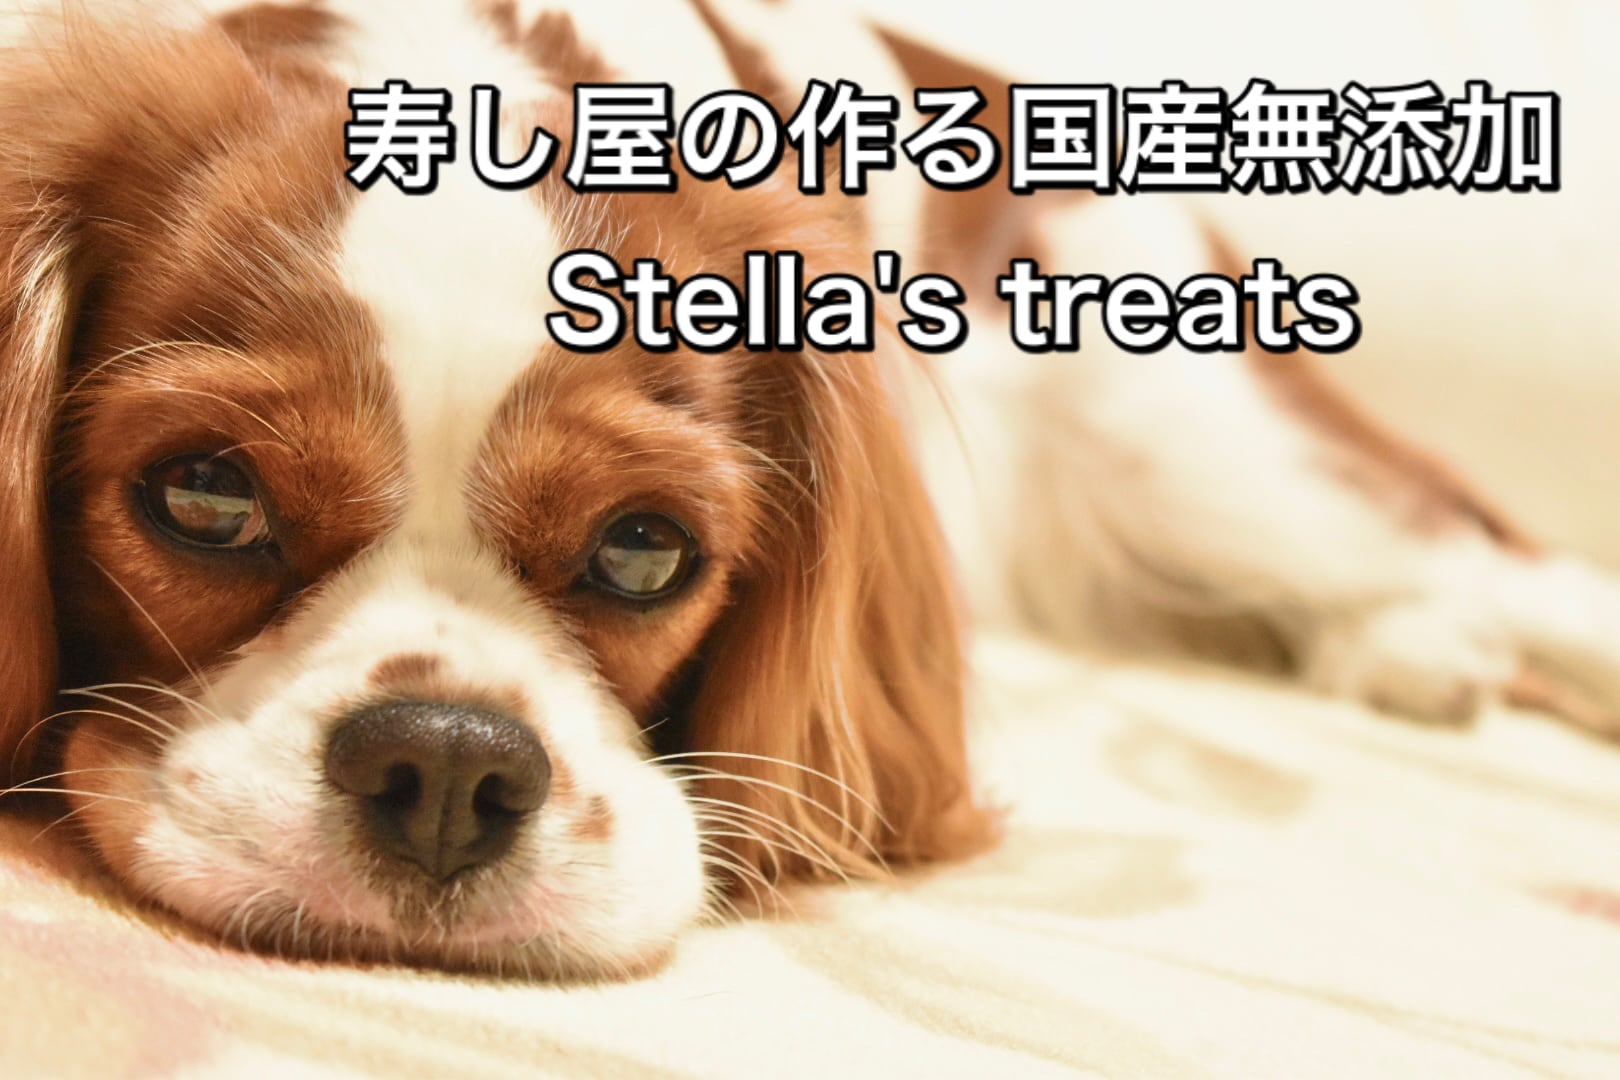 Stella's treats   ステラのおやつ